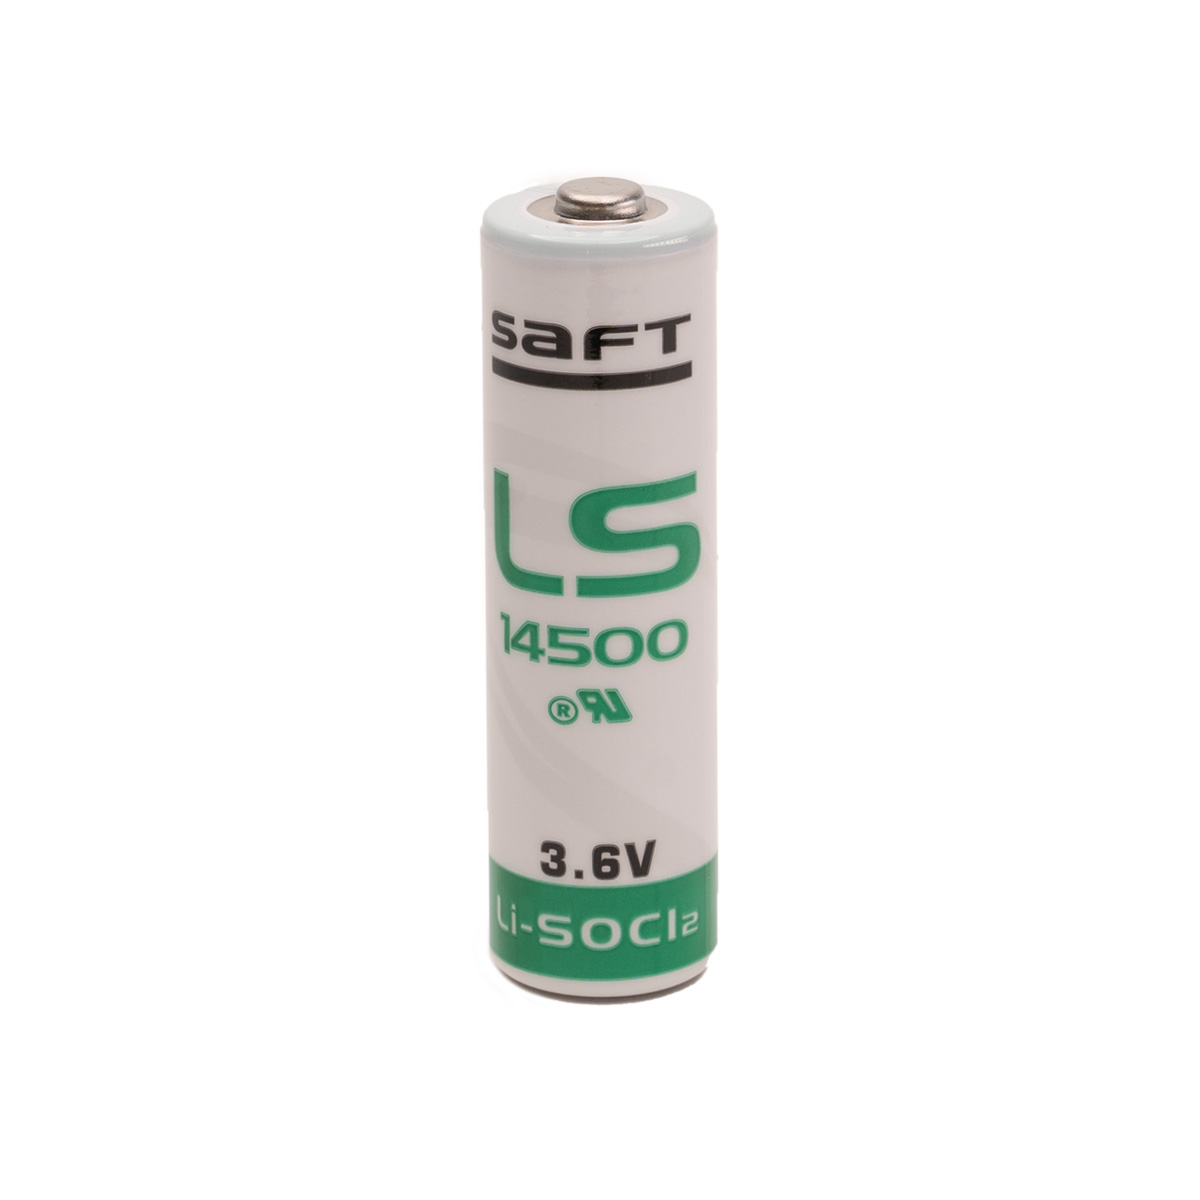 Schandelijk Politiek scherp SAFT LS14500 / AA Lithium batterij - 3.6V - AA / 14500 - Lithium -  Wegwerpbatterijen | NKON